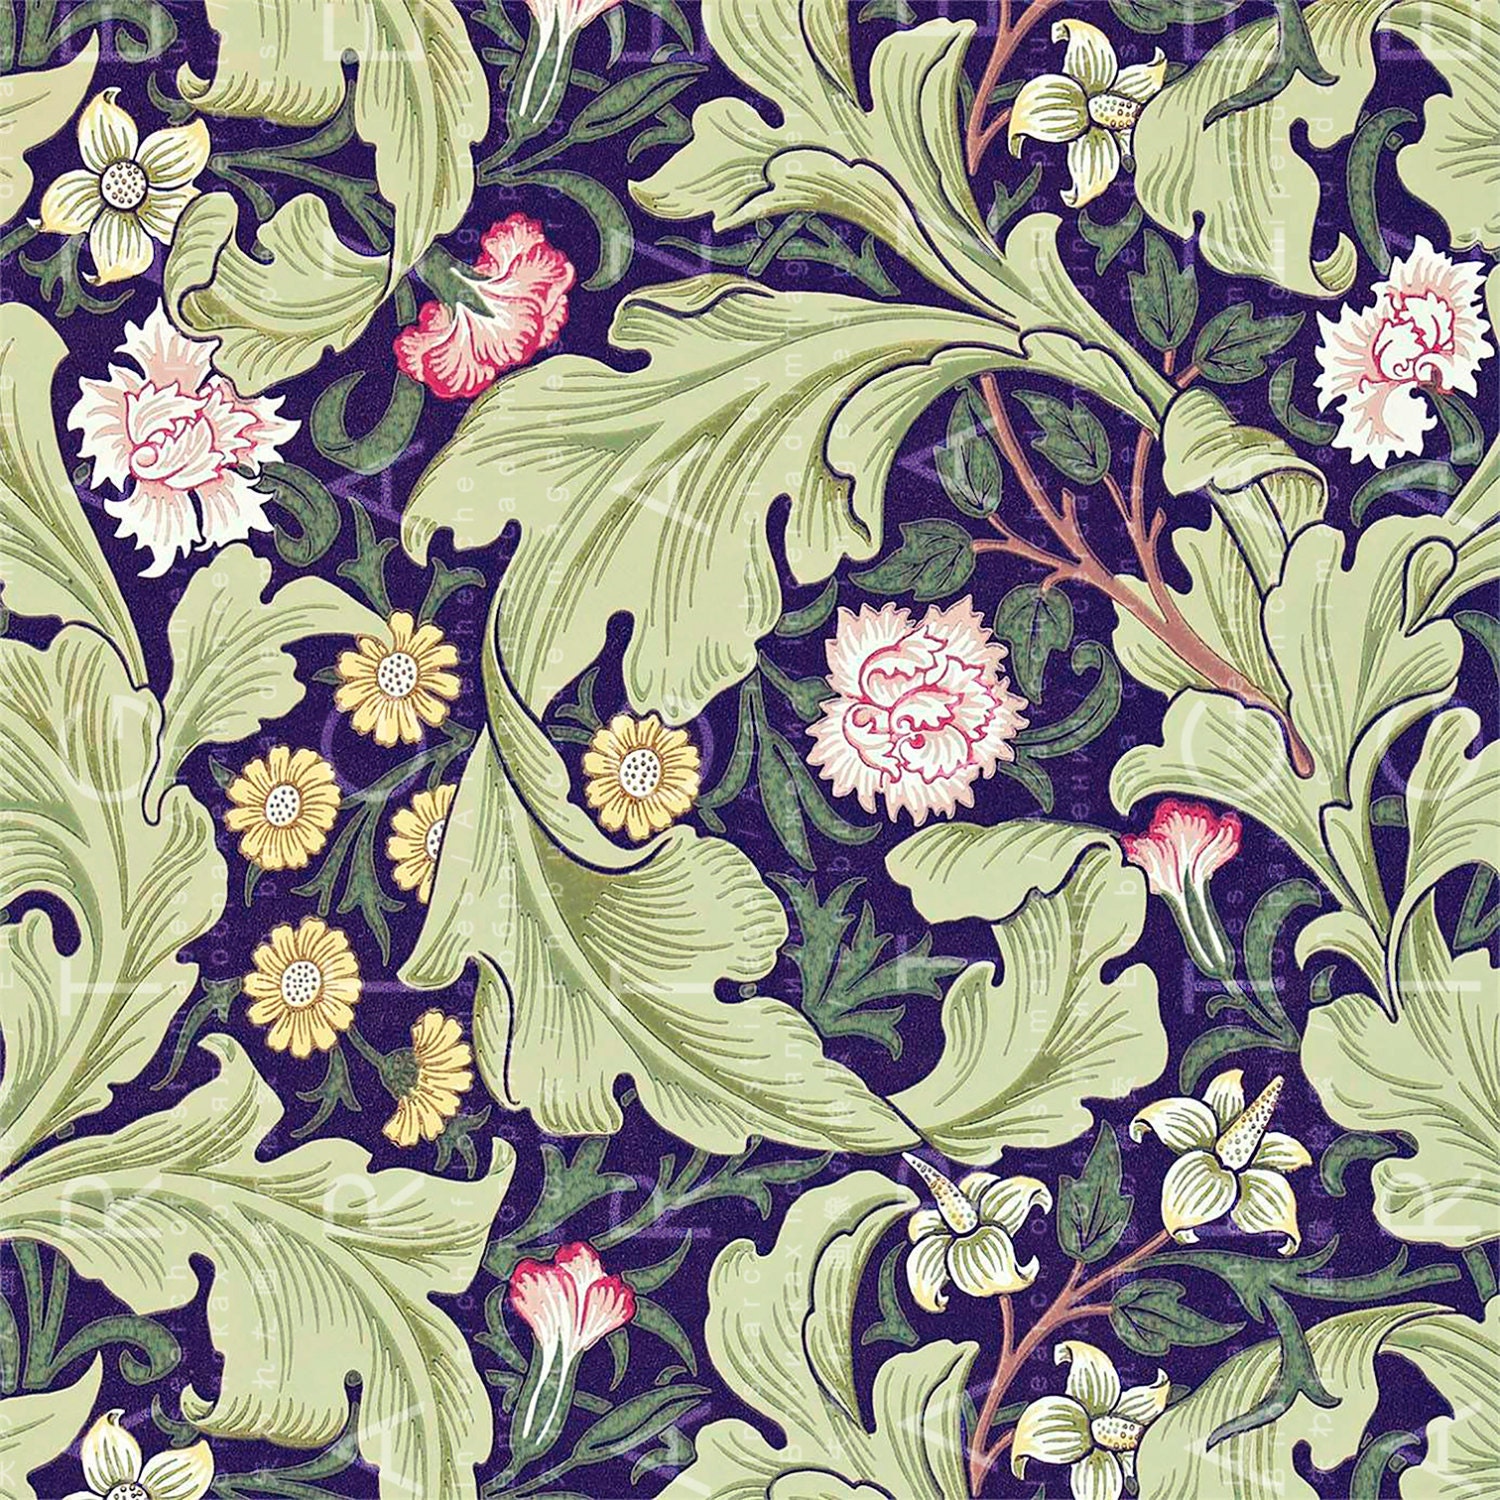 William MORRIS Floral Wallpaper. Printable Art Colorful - Etsy UK